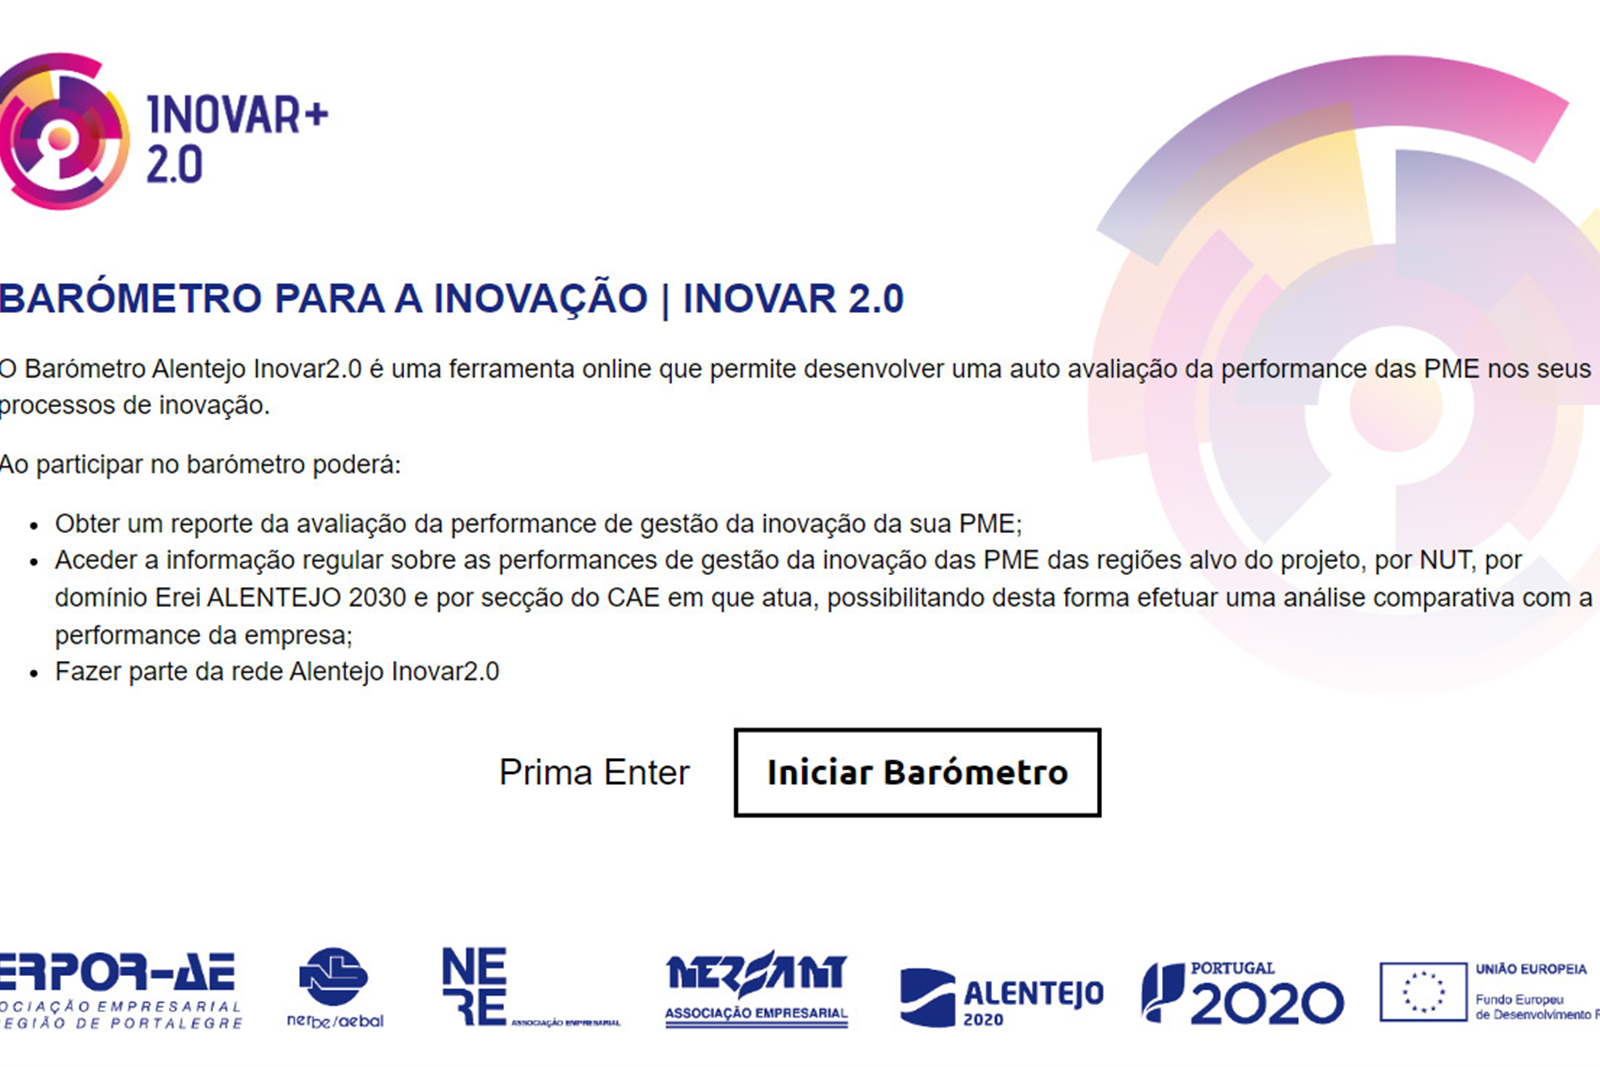 NERSANT e Associações Empresariais do Alentejo lançam Barómetro INOVA 2.0 para avaliação regional da inovação empresarial